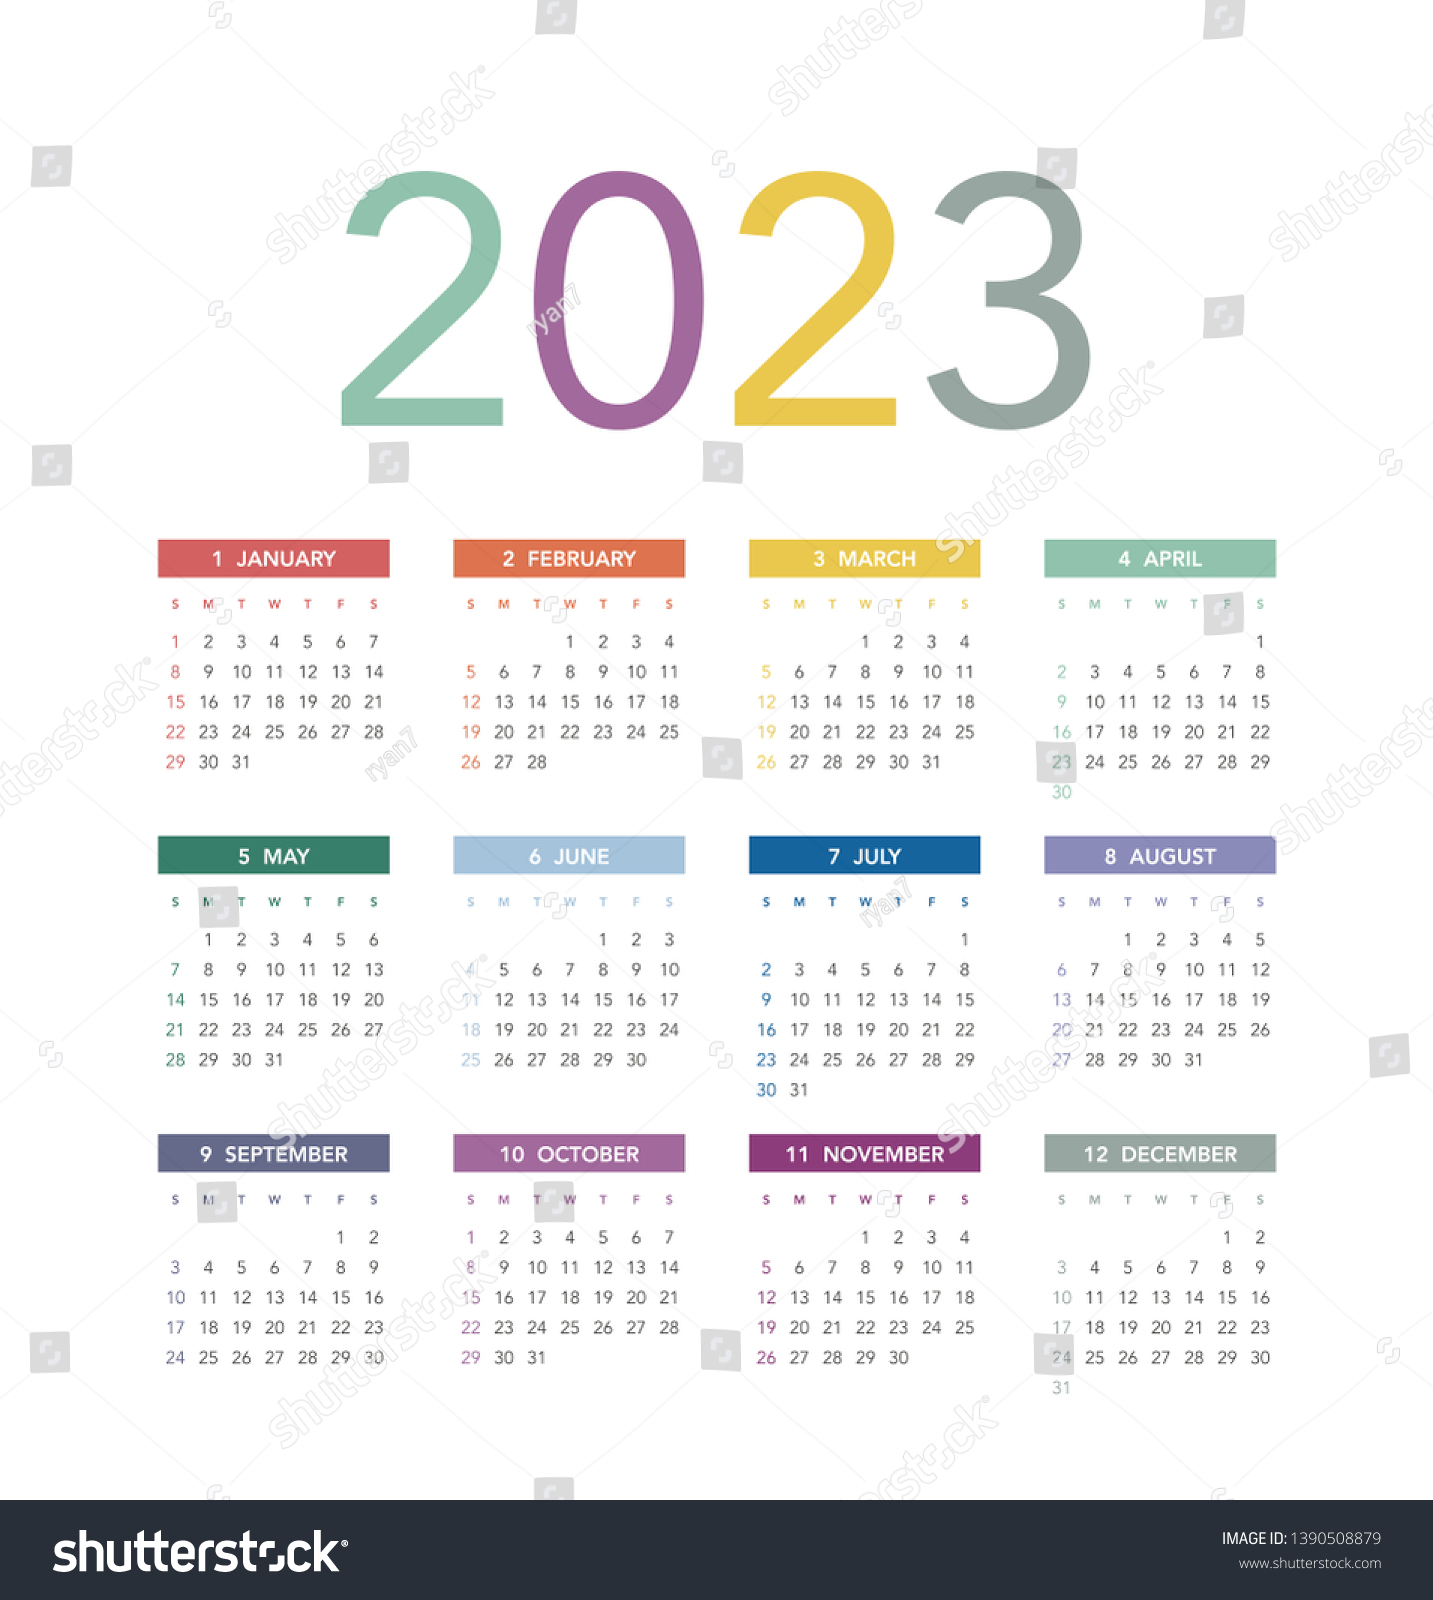 15 неделя 2023. Календарь на 2022-2023 с рисунком. Календарь на 2023 год с праздниками и выходными. Календарь 2023 картинки. Цветной календарь на 2023 год.